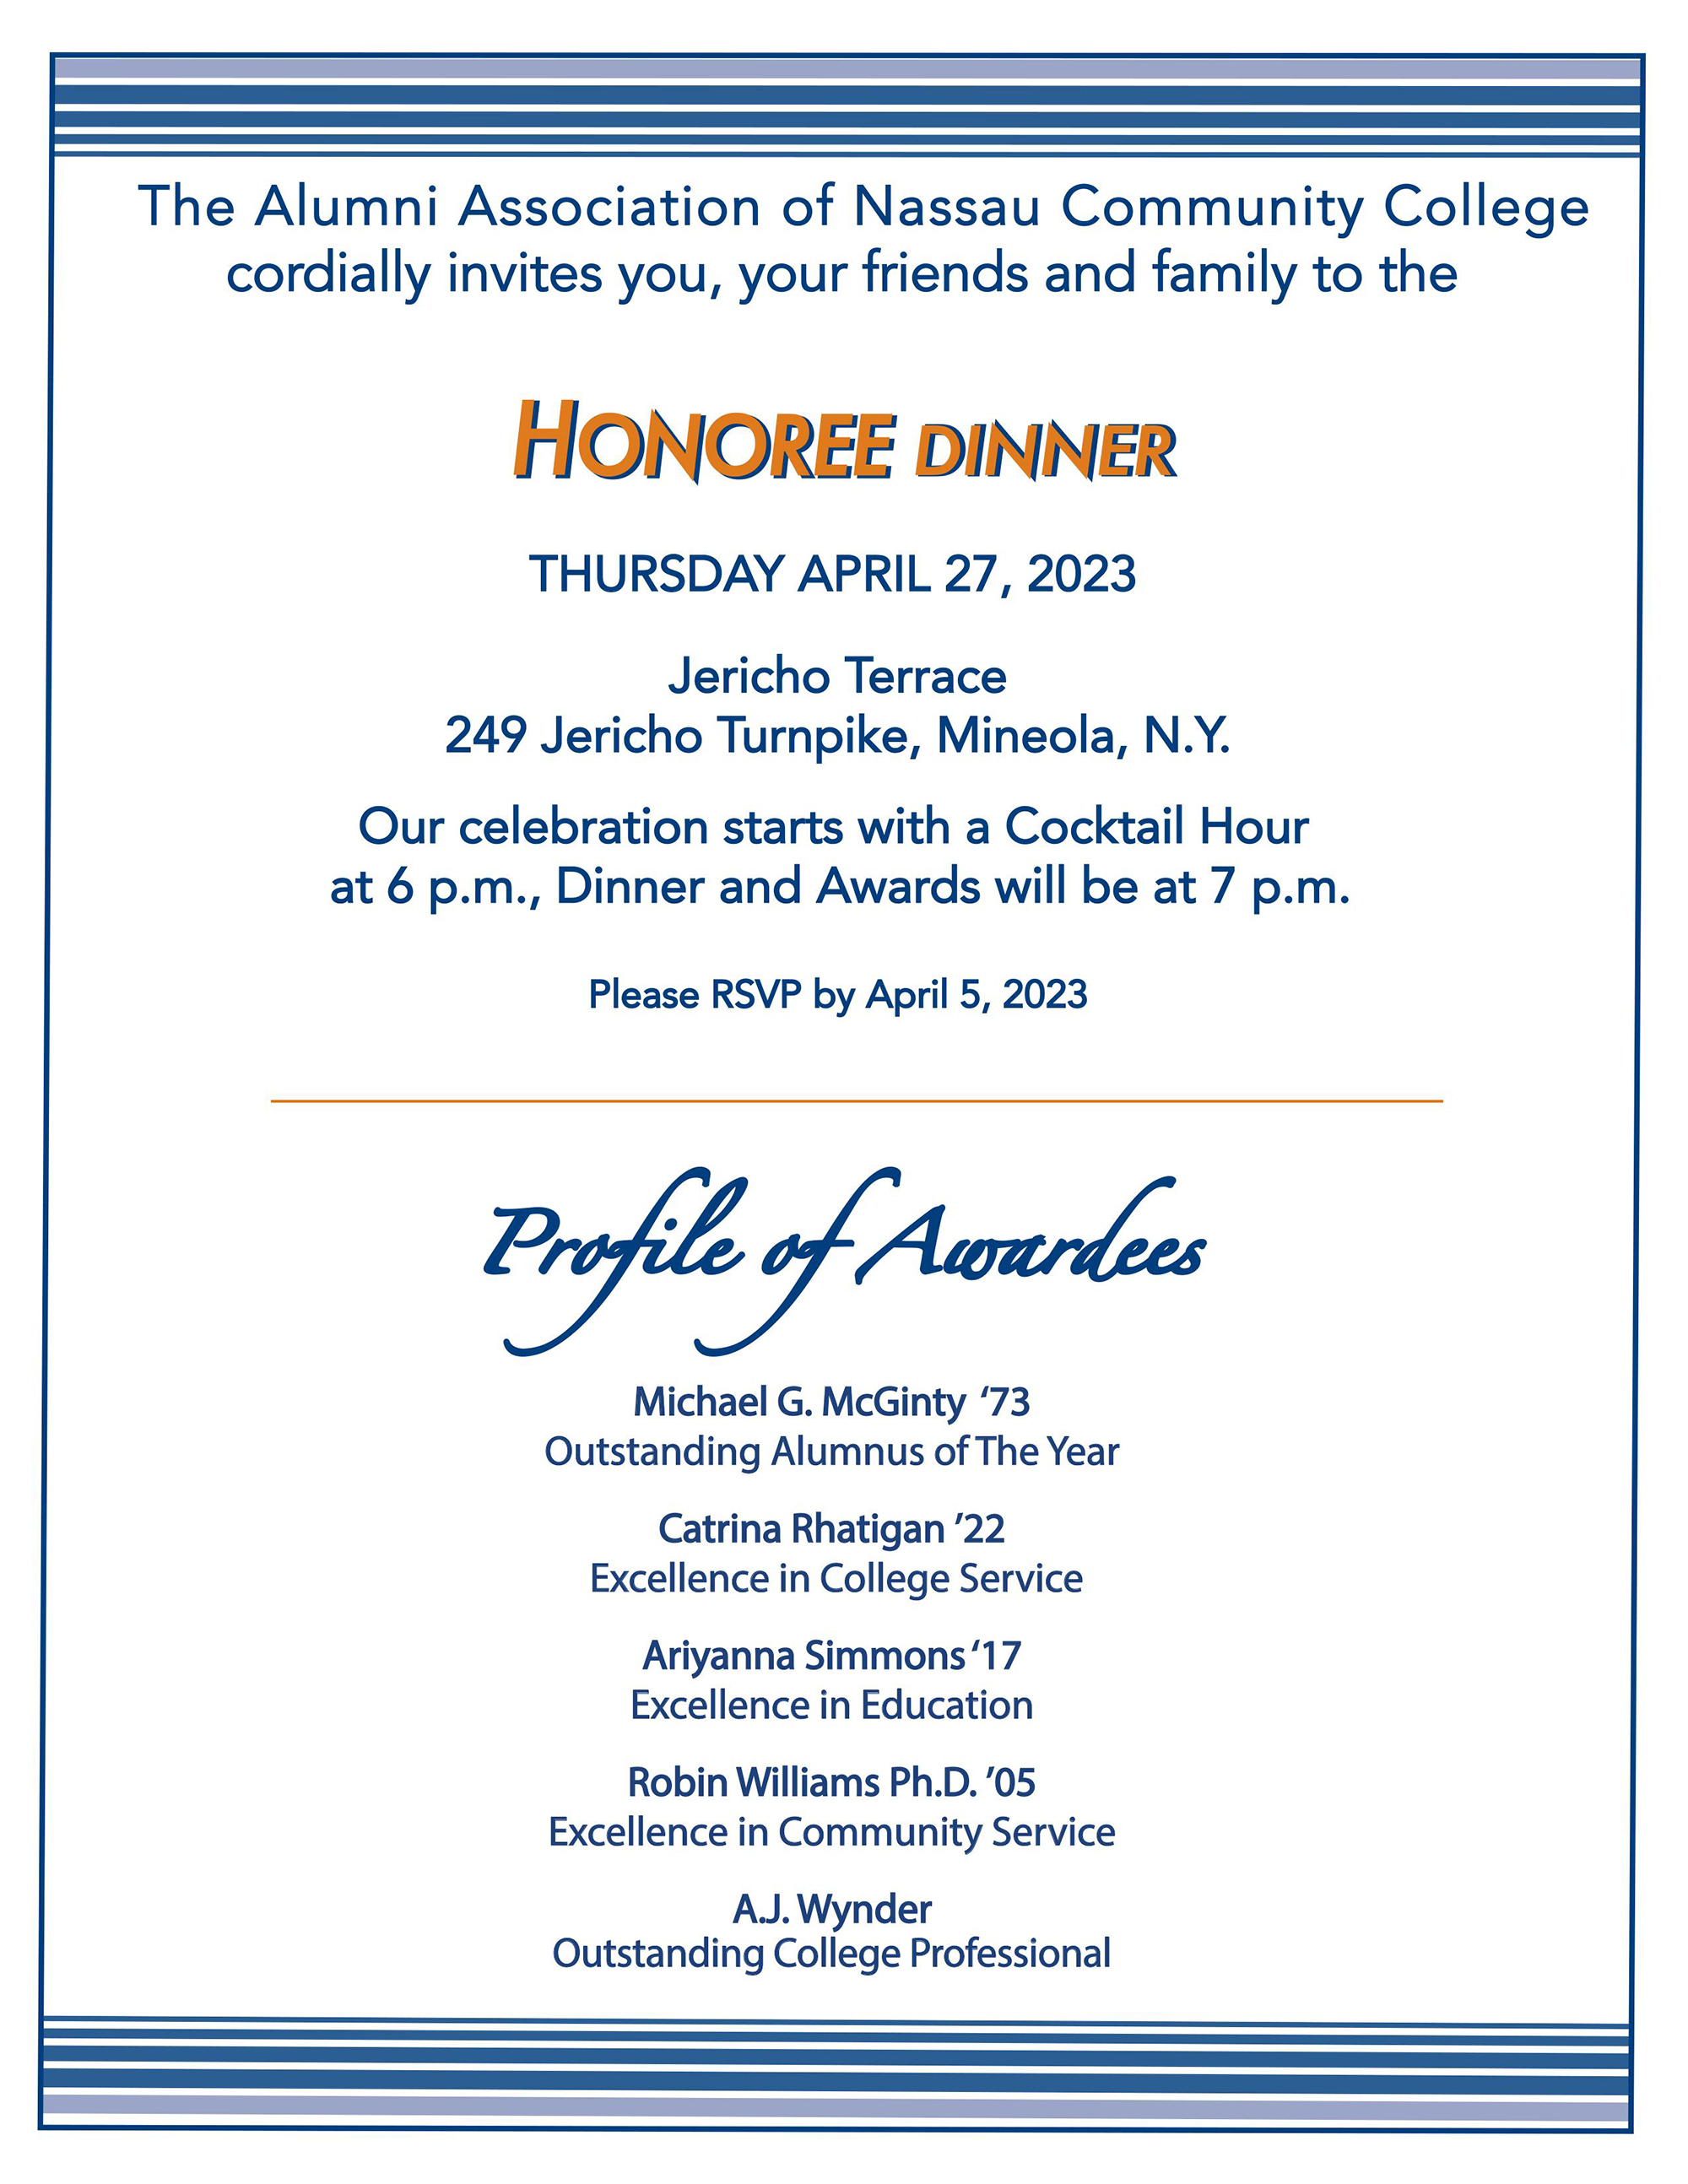 Honoree Dinner Thursday April 27